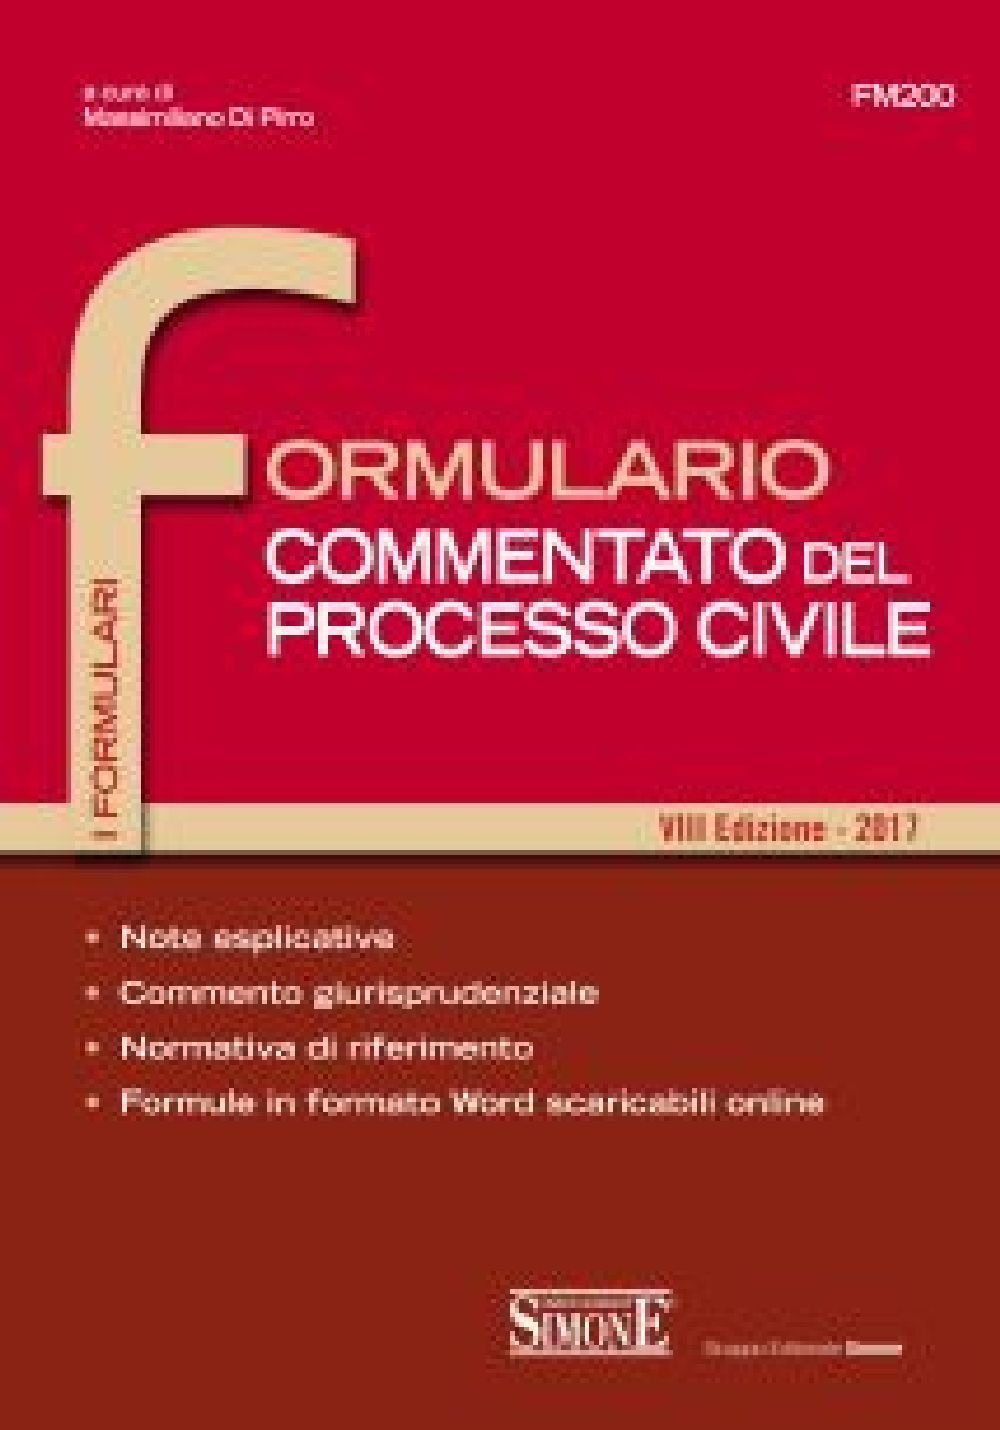 Formulario Commentato del Processo Civile - FM200